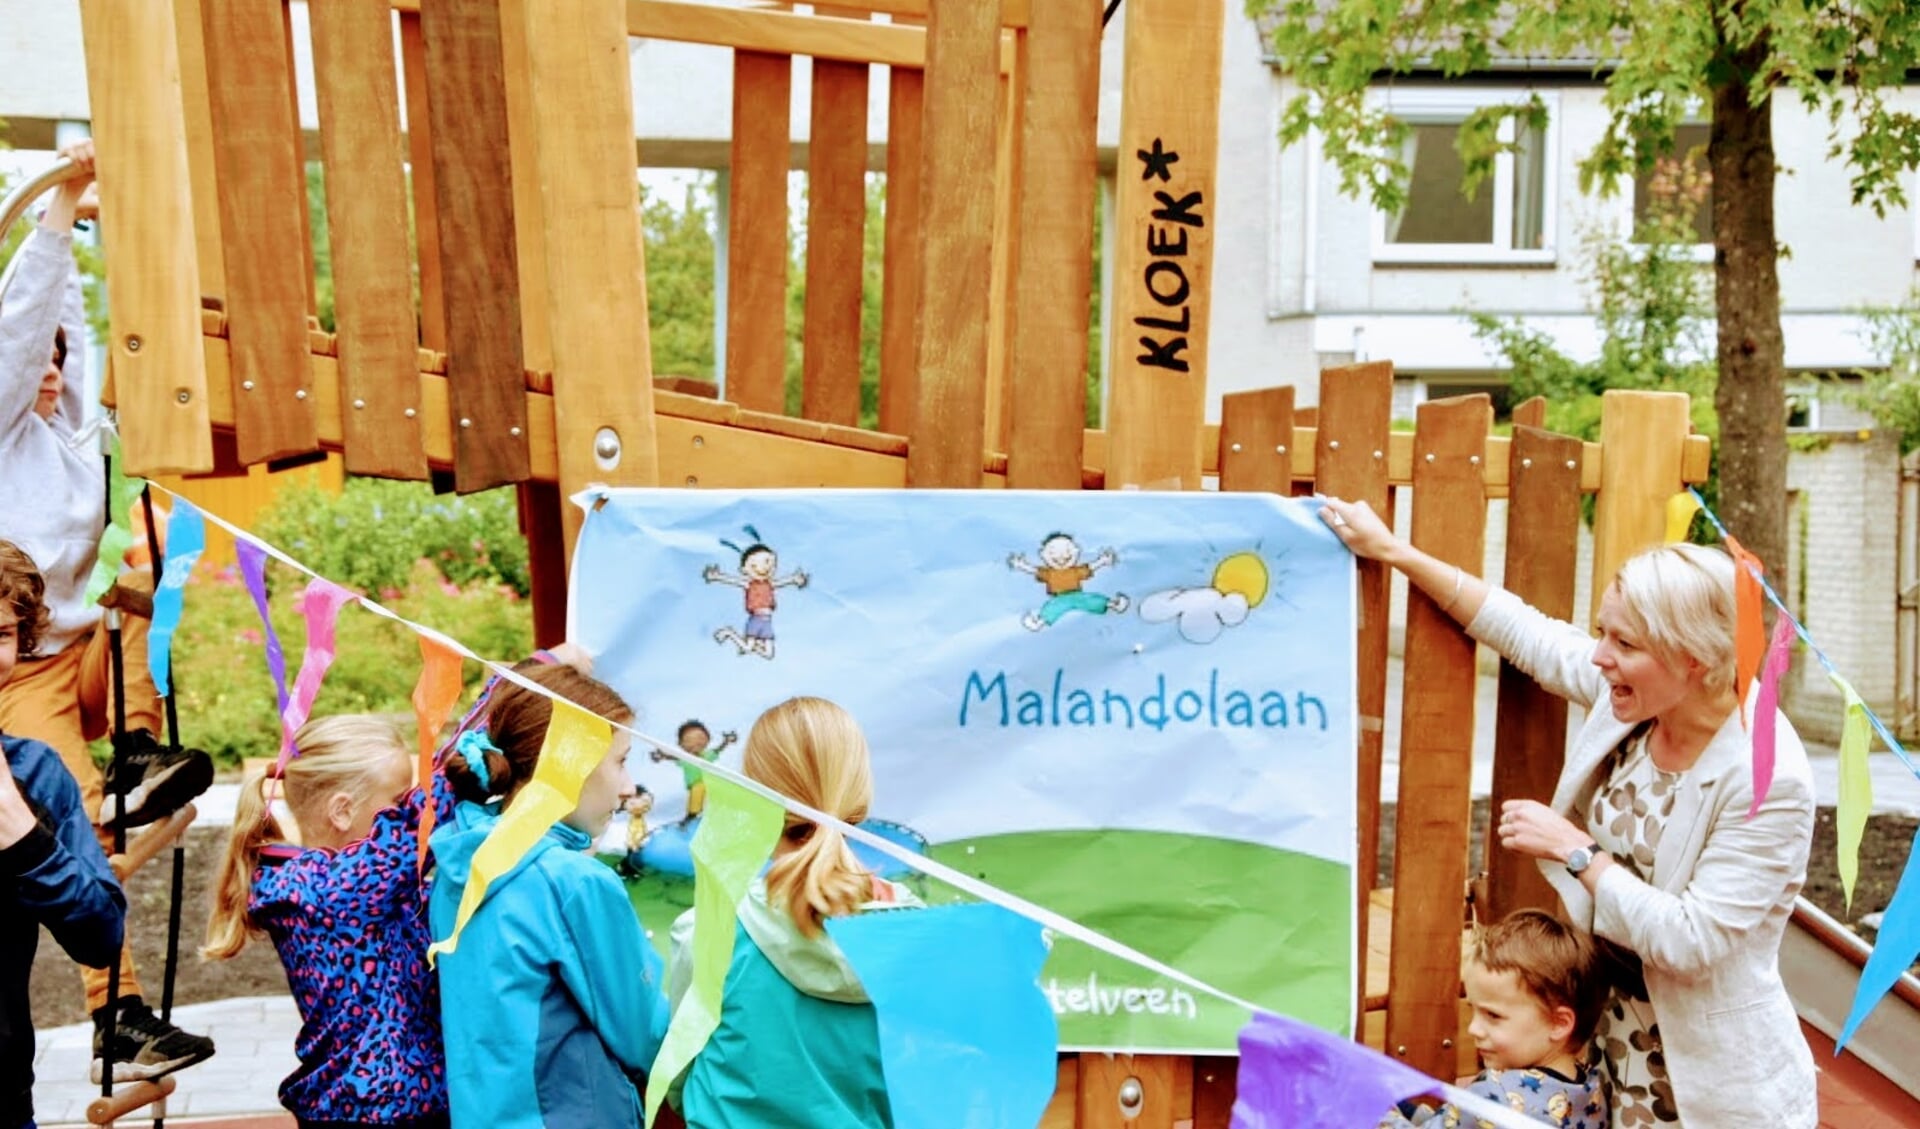 Wethouder Floor Gordon verrichtte in juni 20202 met kinderen het vernieuwde speelveld aan de Malanodolaan in Westwijk